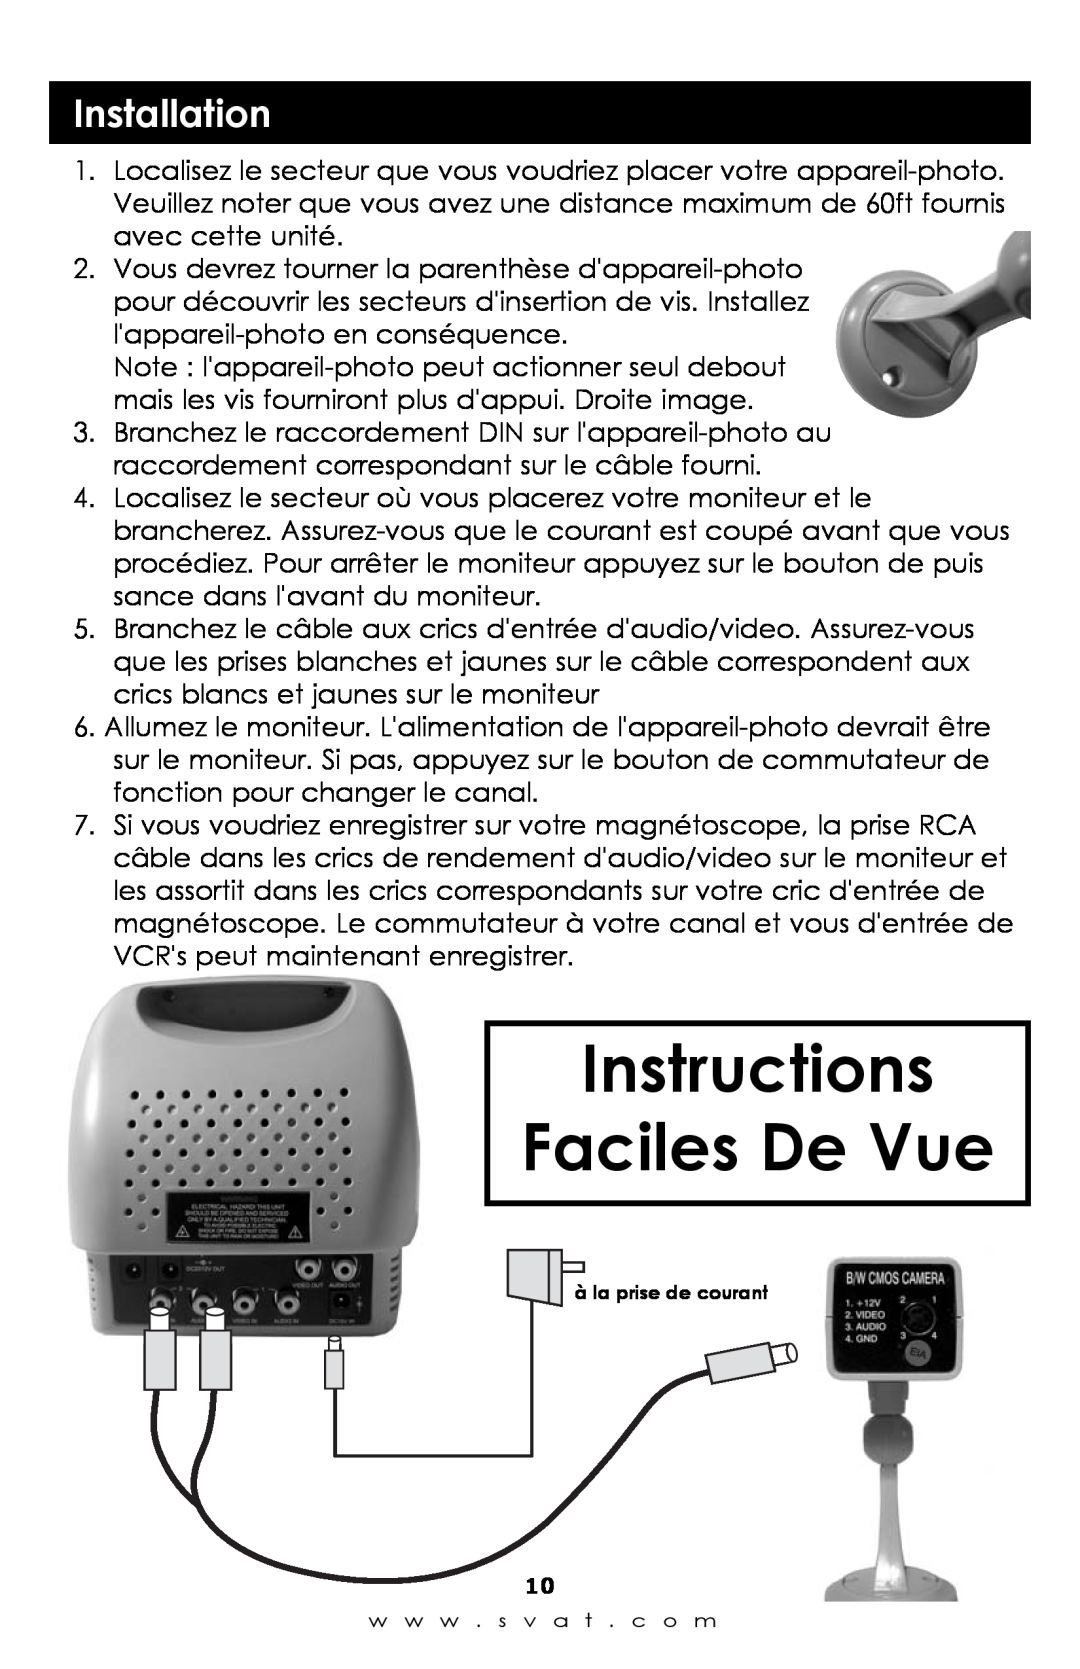 SVAT Electronics qxd600 instruction manual Instructions Faciles De Vue, Installation, à la prise de courant 